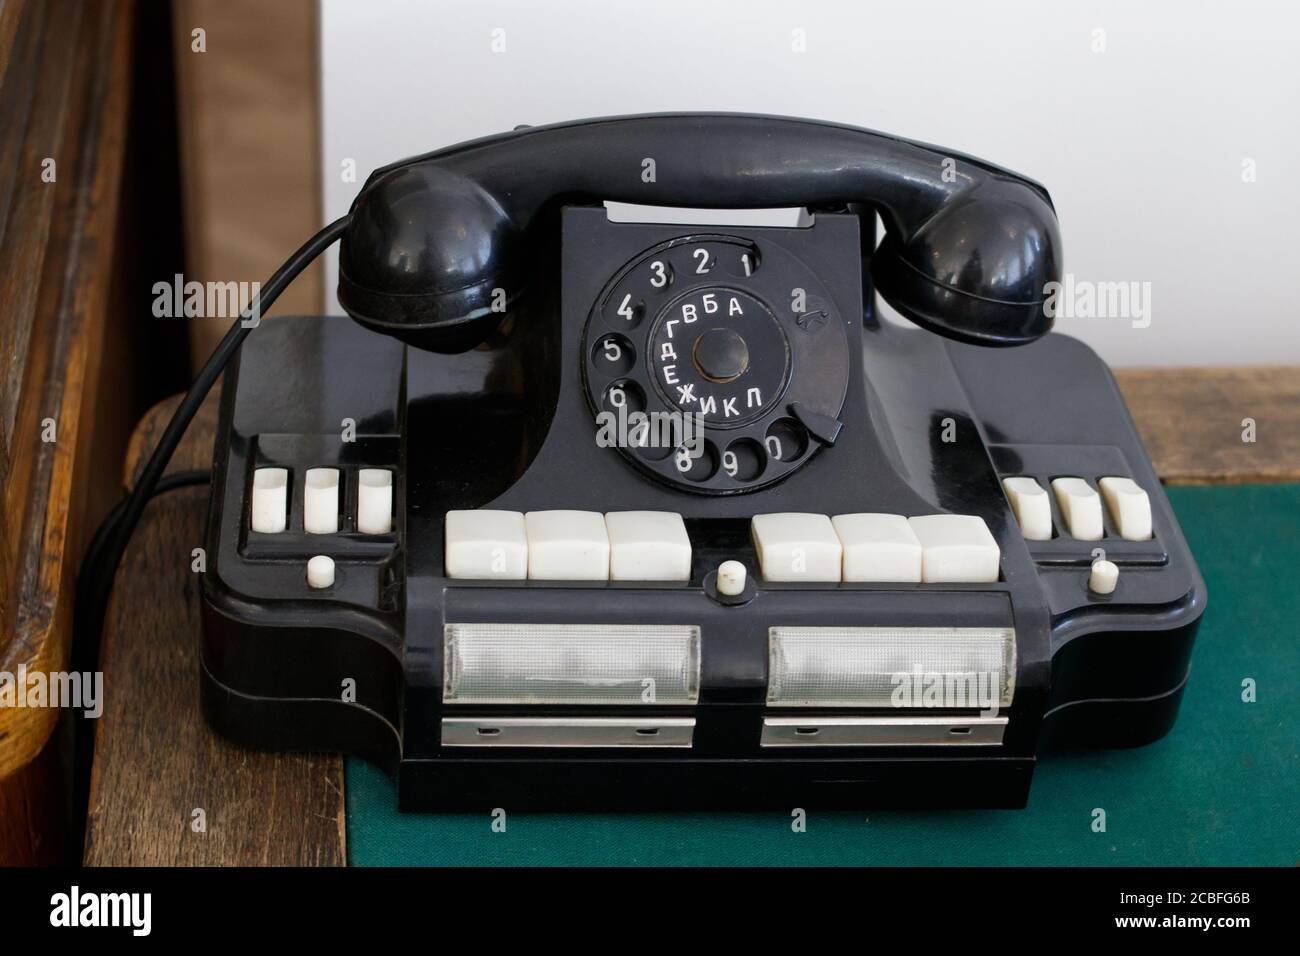 Vecchio telefono da ufficio sovietico con lettere russe su un tavolo di legno, il piano portapaziente è coperto di tessuto verde. Foto Stock